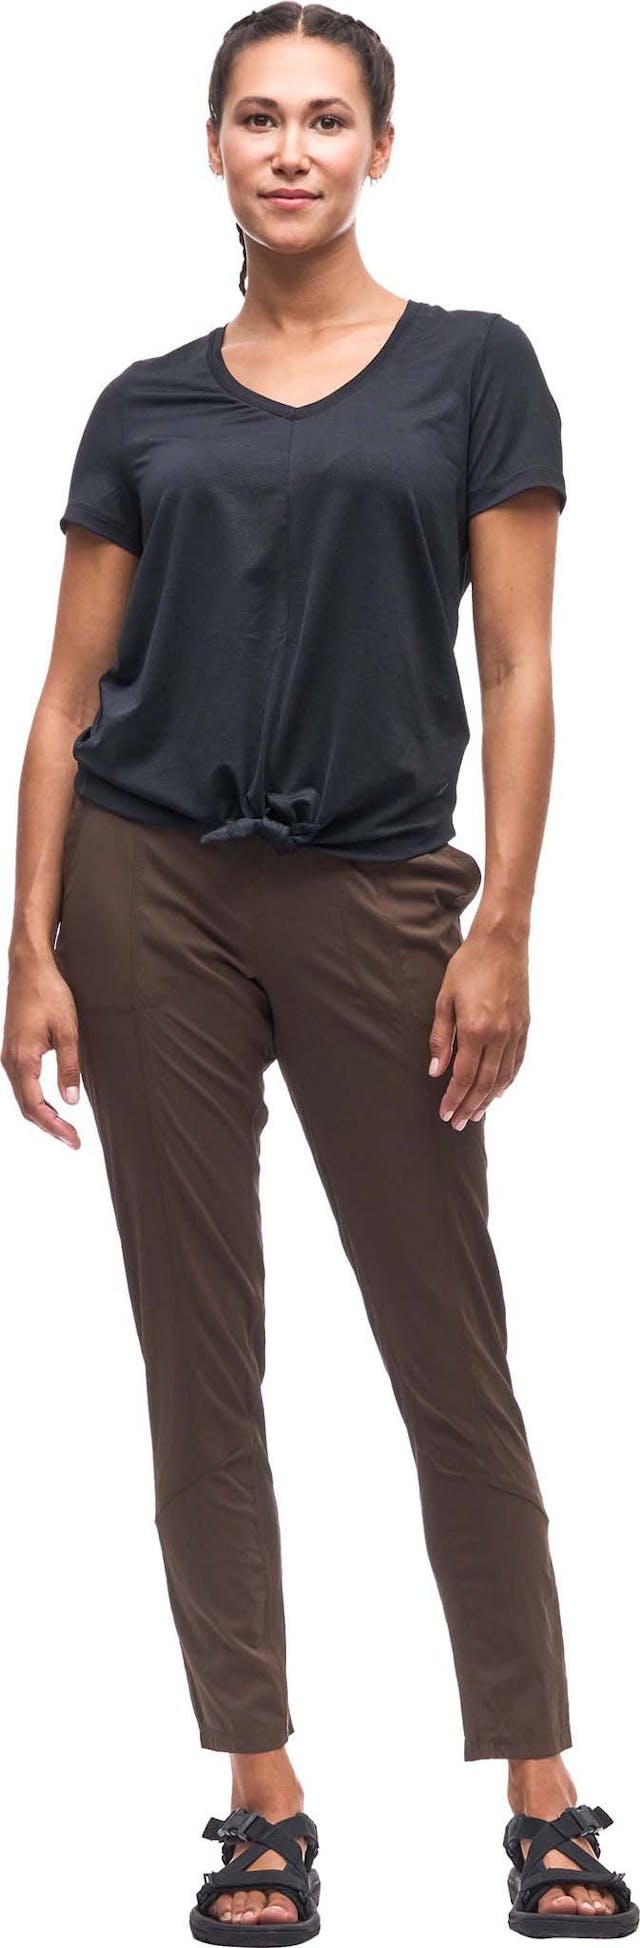 Image de produit pour Pantalon à taille régulière et à jambe droite Matkailu IV - Femme